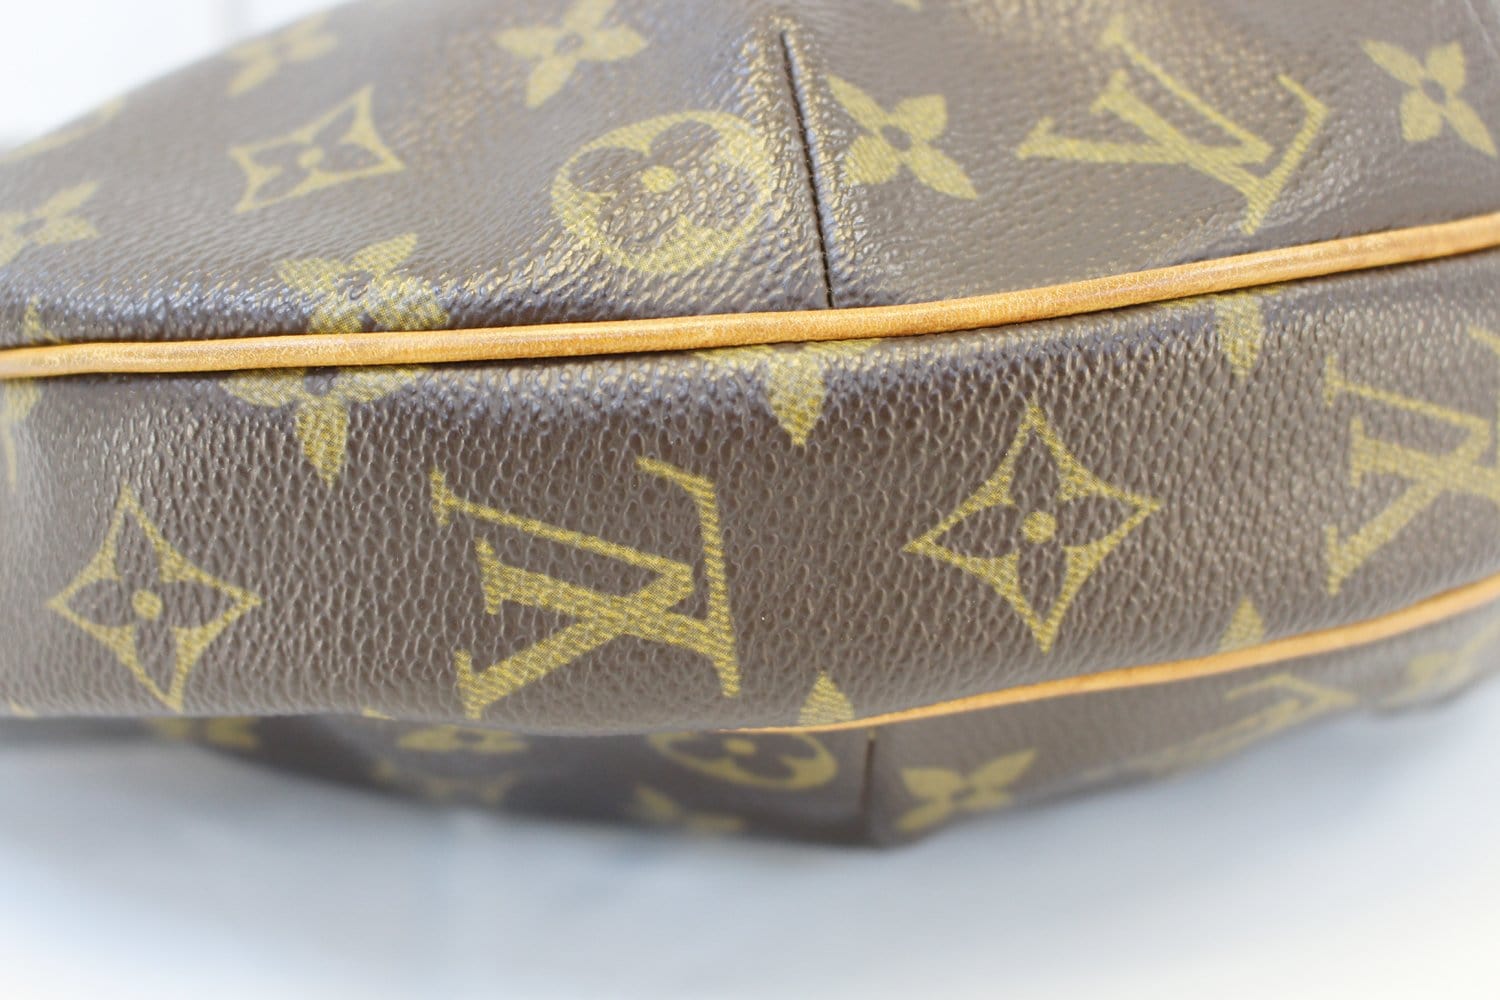 Louis Vuitton Croissant Handbag Monogram Canvas GM Brown 2411231